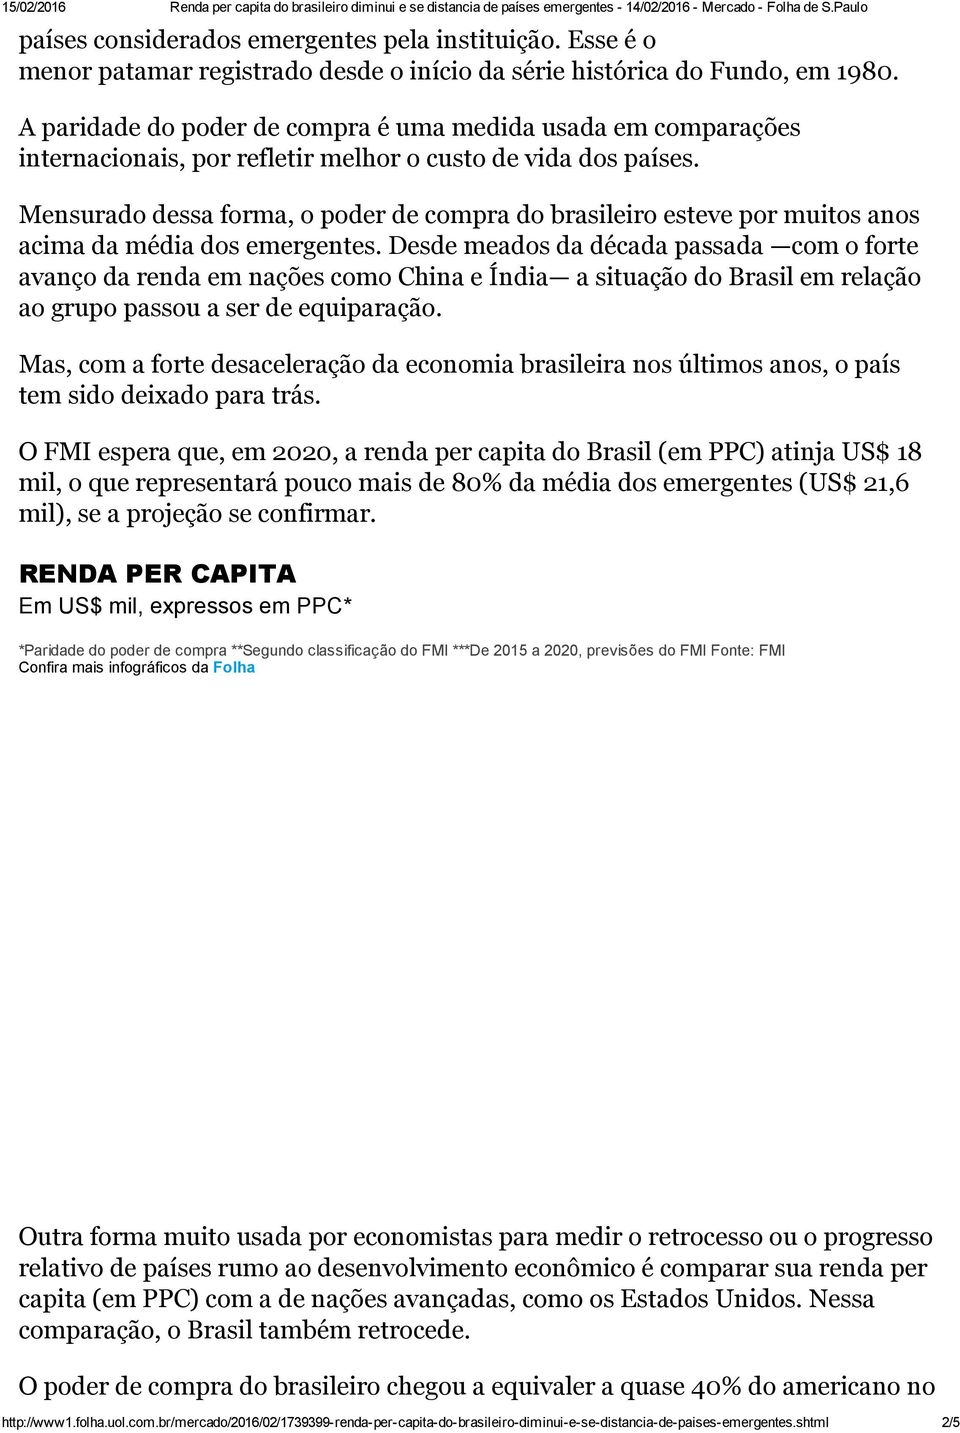 Mensurado dessa forma, o poder de compra do brasileiro esteve por muitos anos acima da média dos emergentes.